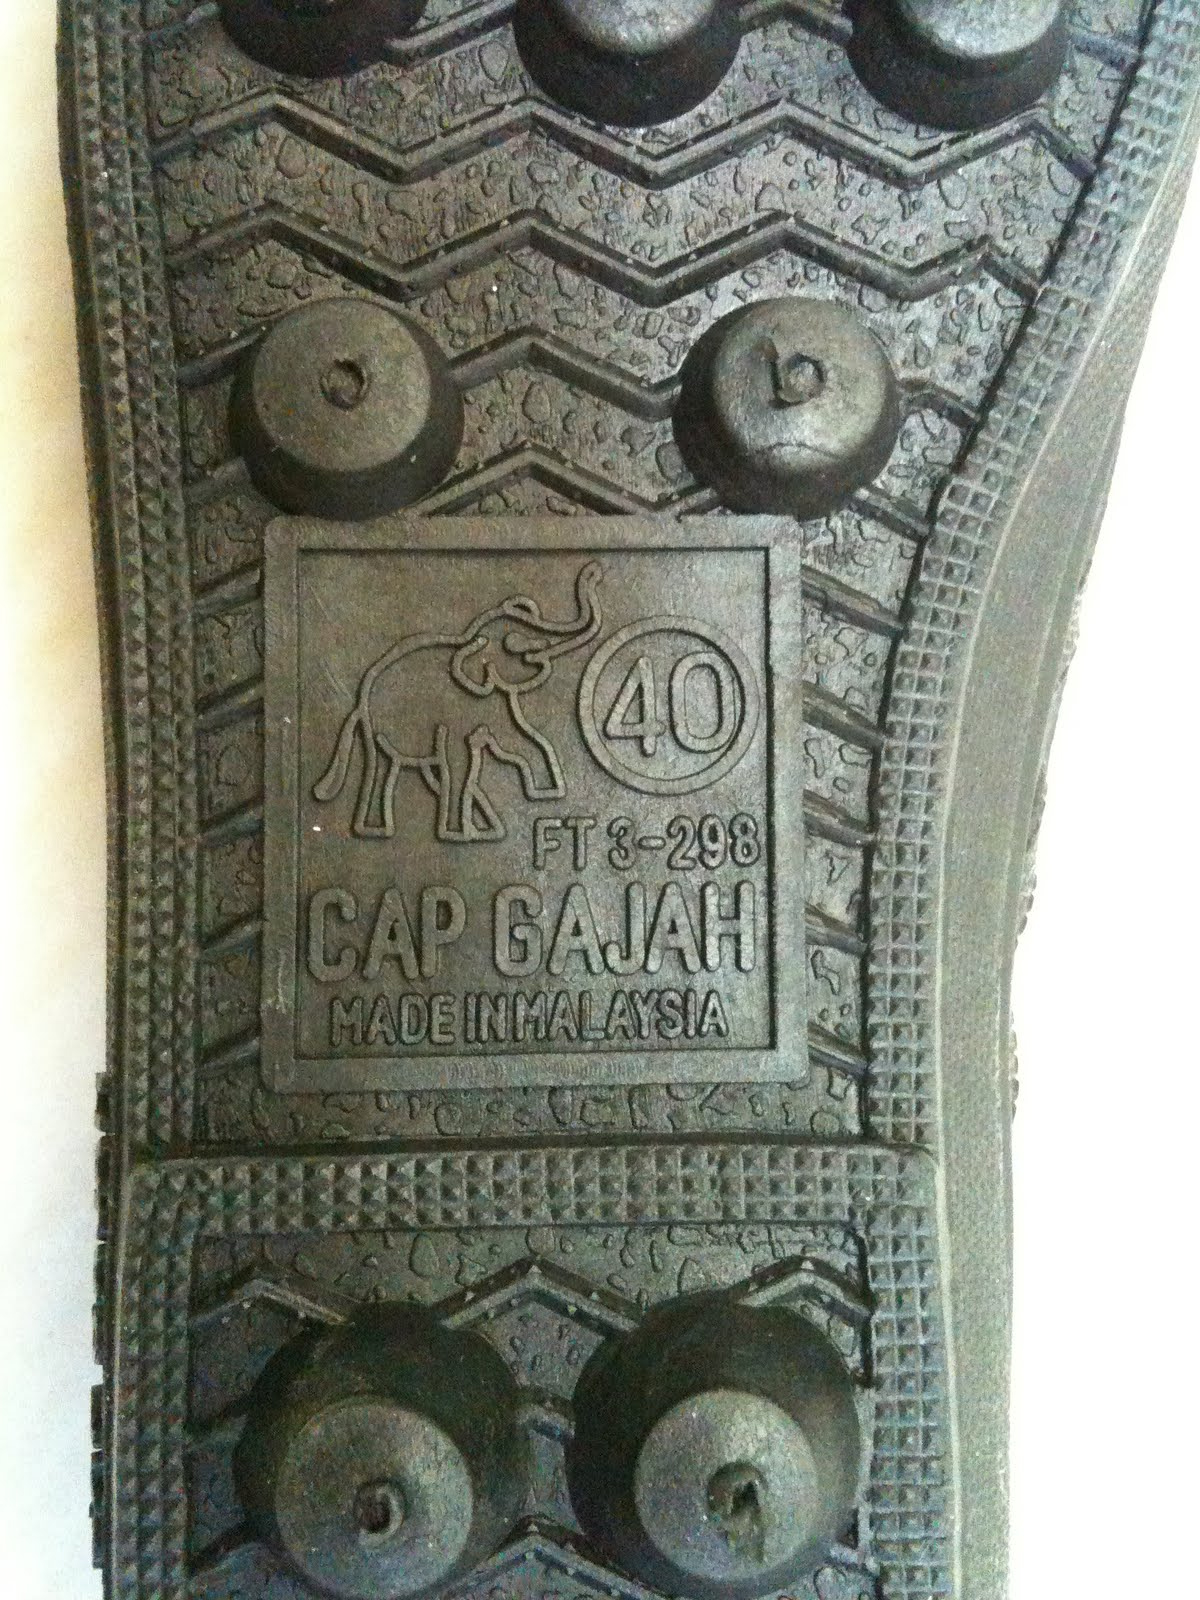 cap gajah rubber shoes